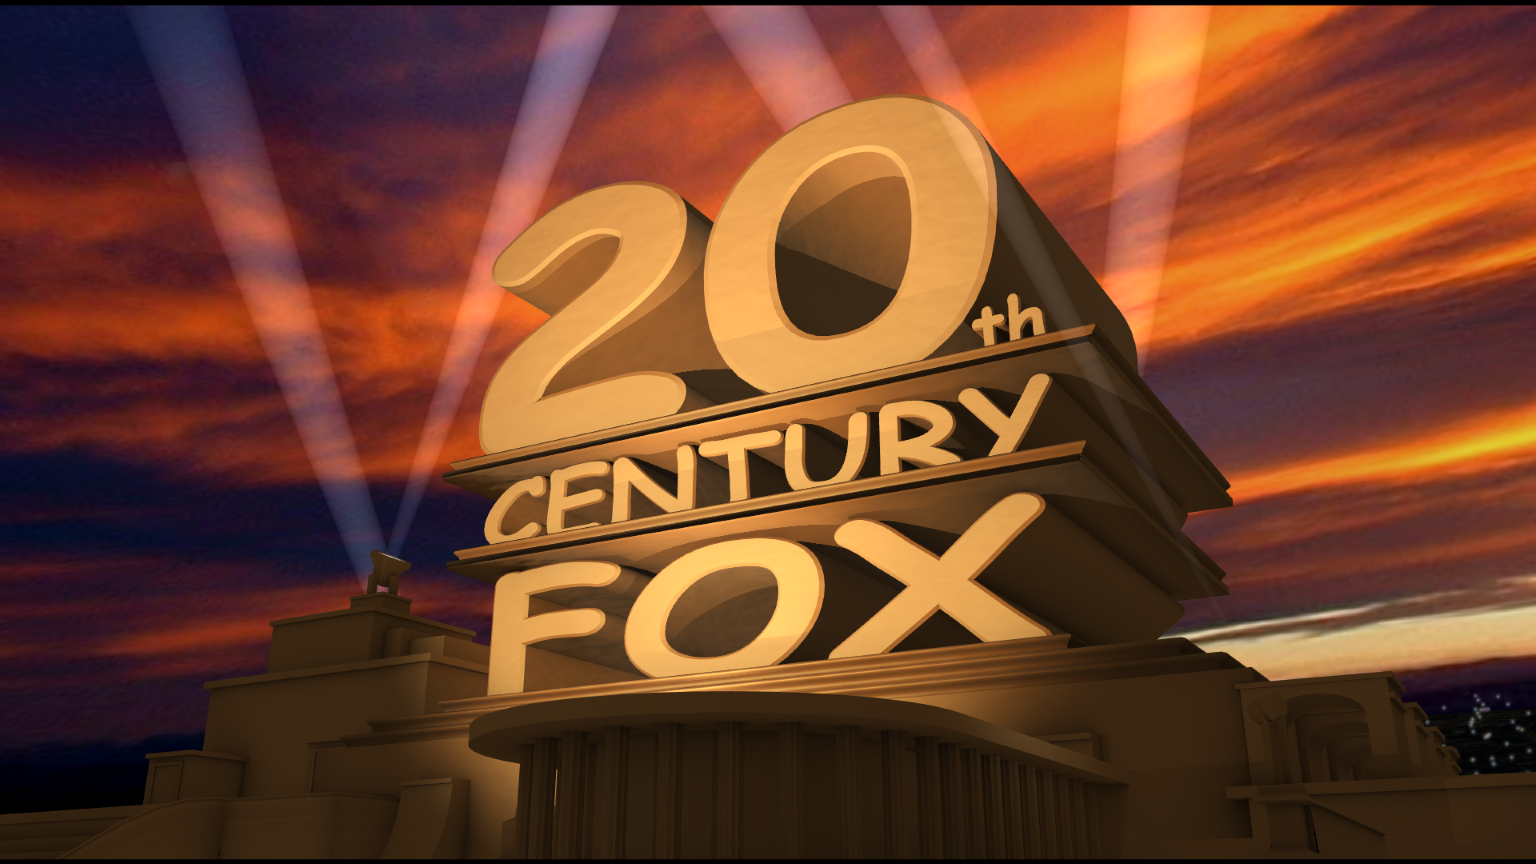 Видео поздравление 20 лет. Киностудия двадцатый век Фокс. Интро в стиле 20th Century Fox. 20 Лет выпуска. Встреча выпускников 20 лет.